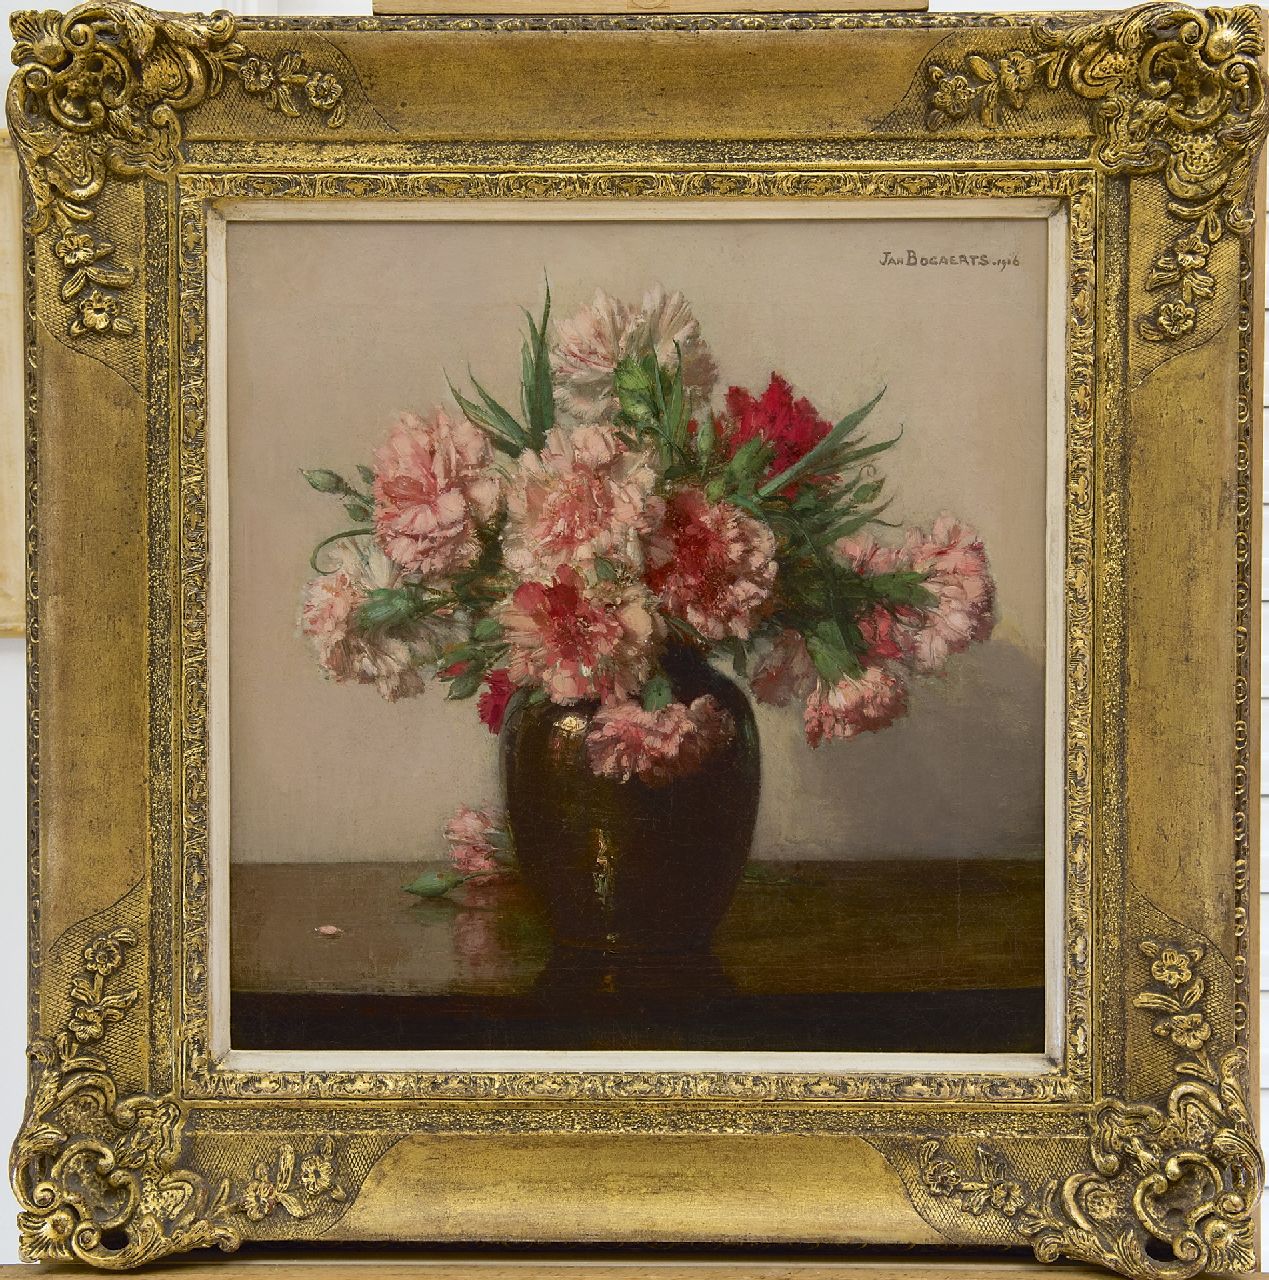 Bogaerts J.J.M.  | Johannes Jacobus Maria 'Jan' Bogaerts, Roze anjers, olieverf op doek 39,6 x 38,5 cm, gesigneerd rechtsboven en gedateerd 1916